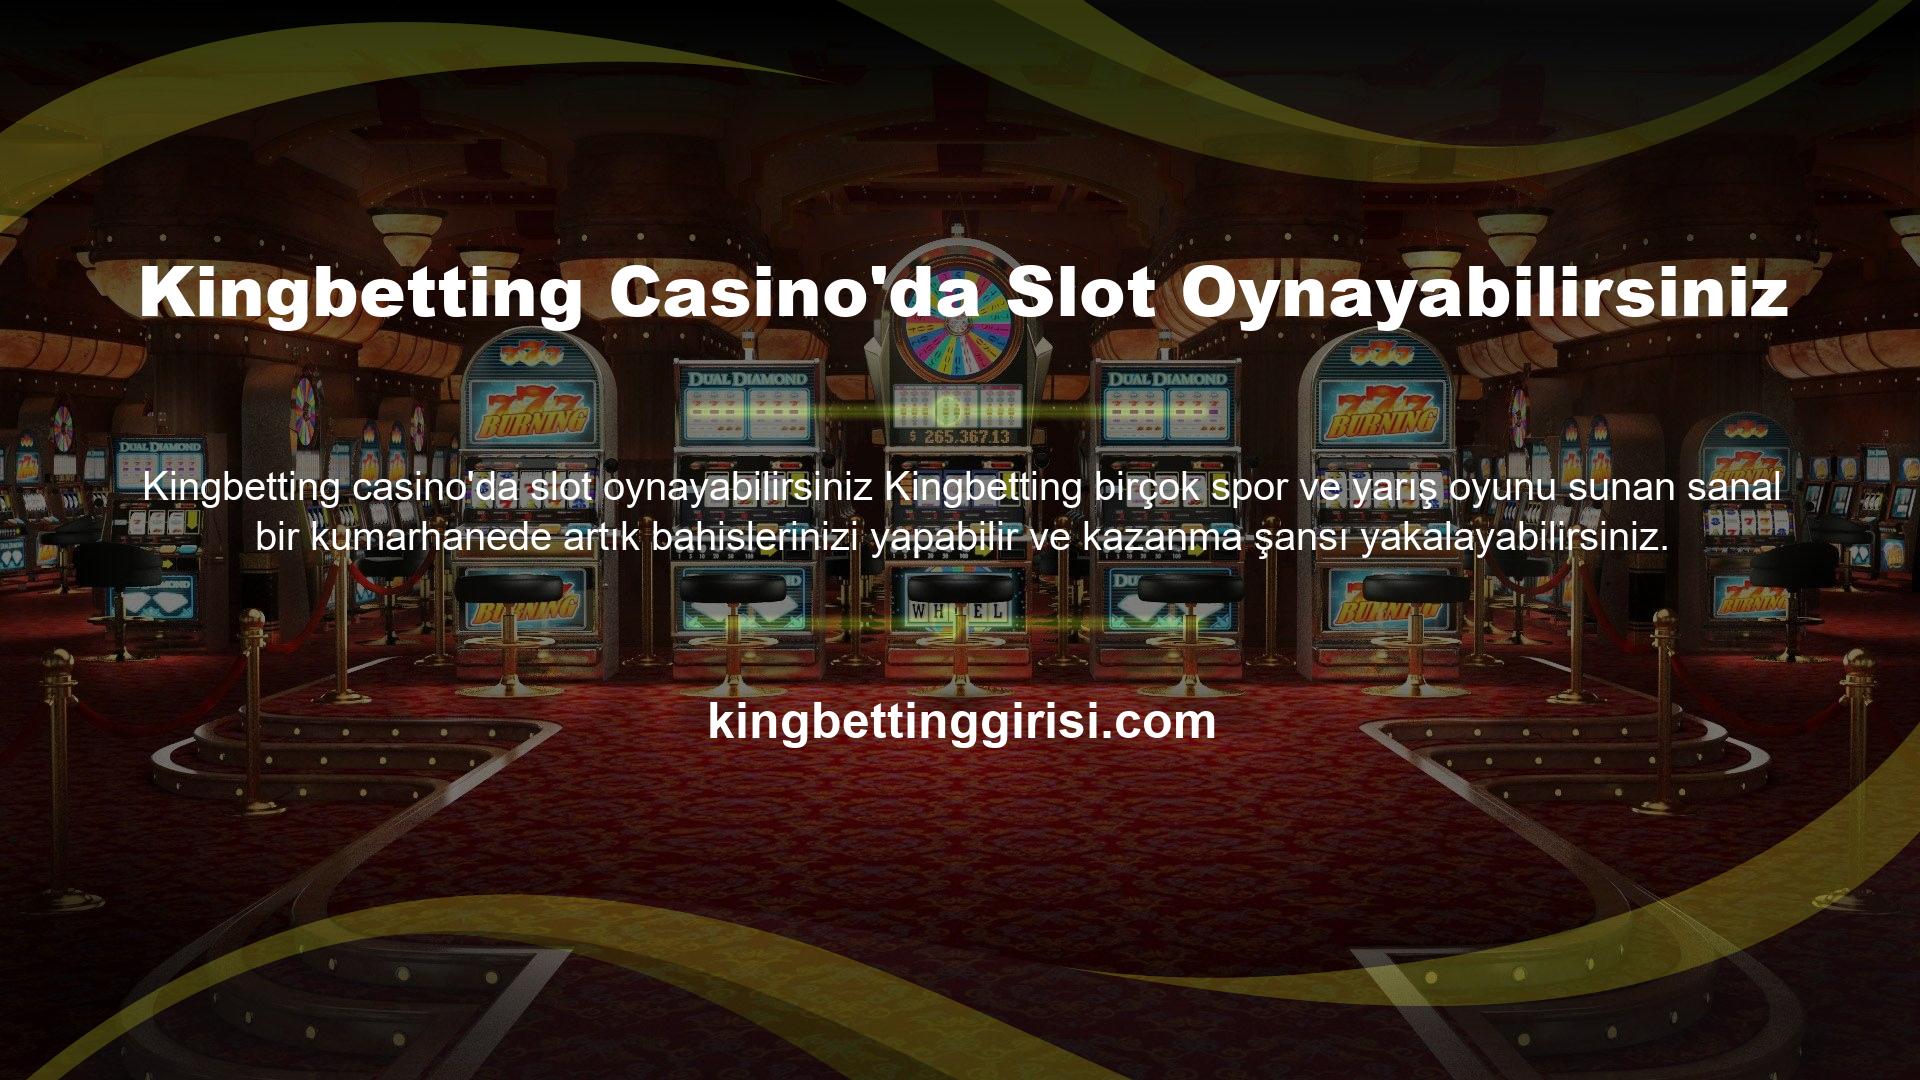 Ünlü casino oyunları dışında sanal casino oyunları da artık milyonlarca kişi tarafından önceden tahmin ederek kazanma şansı için tercih edilmektedir